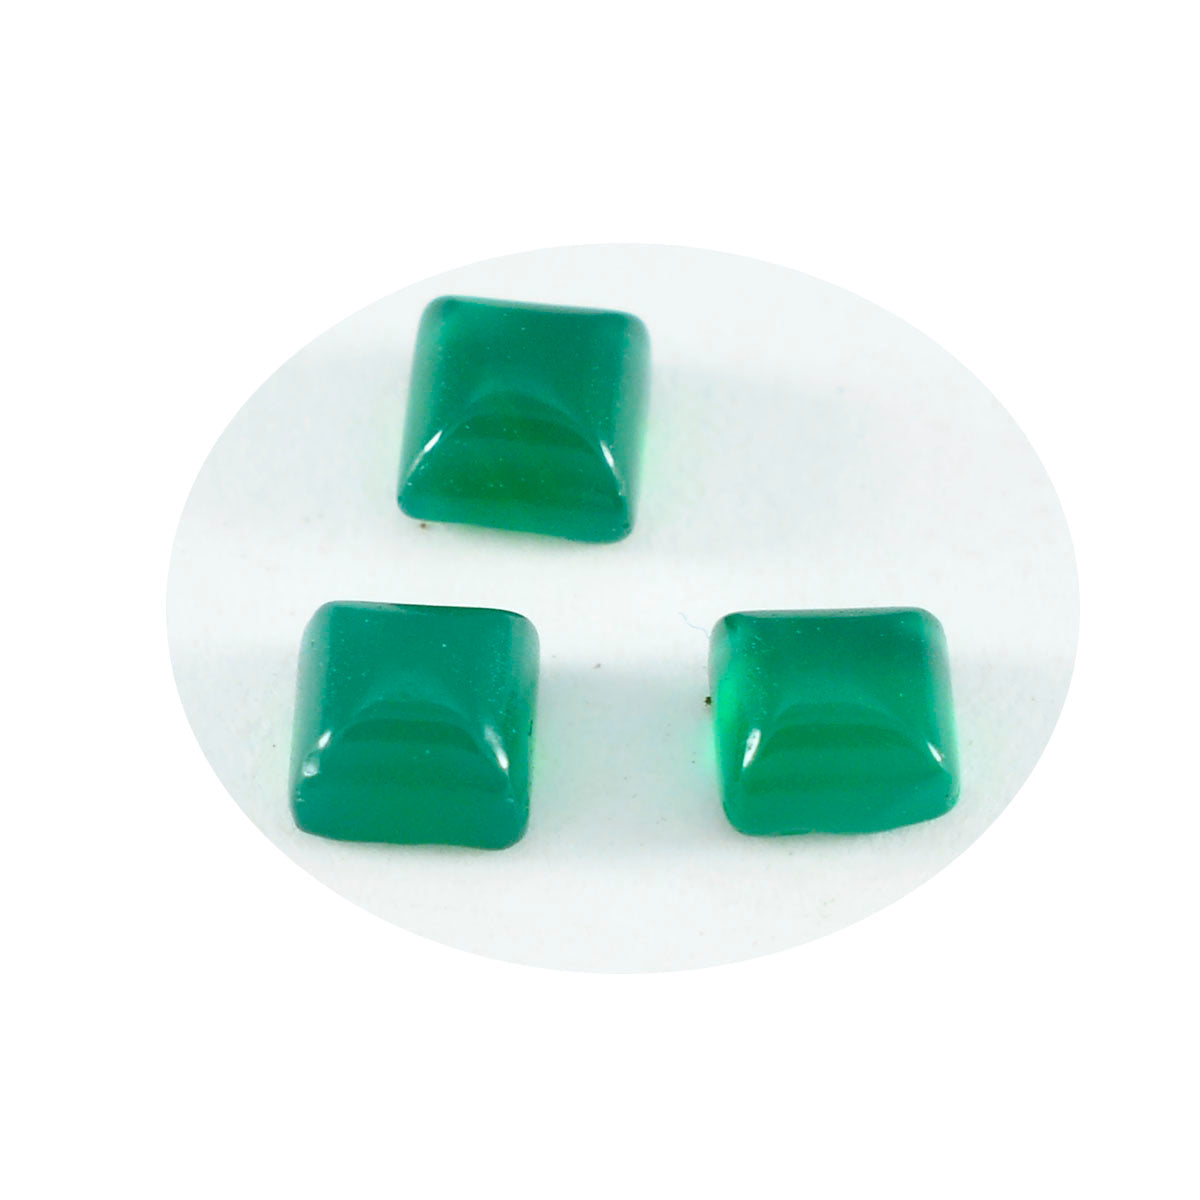 riyogems 1 шт. зеленый оникс кабошон 7x7 мм квадратной формы хорошее качество свободный камень